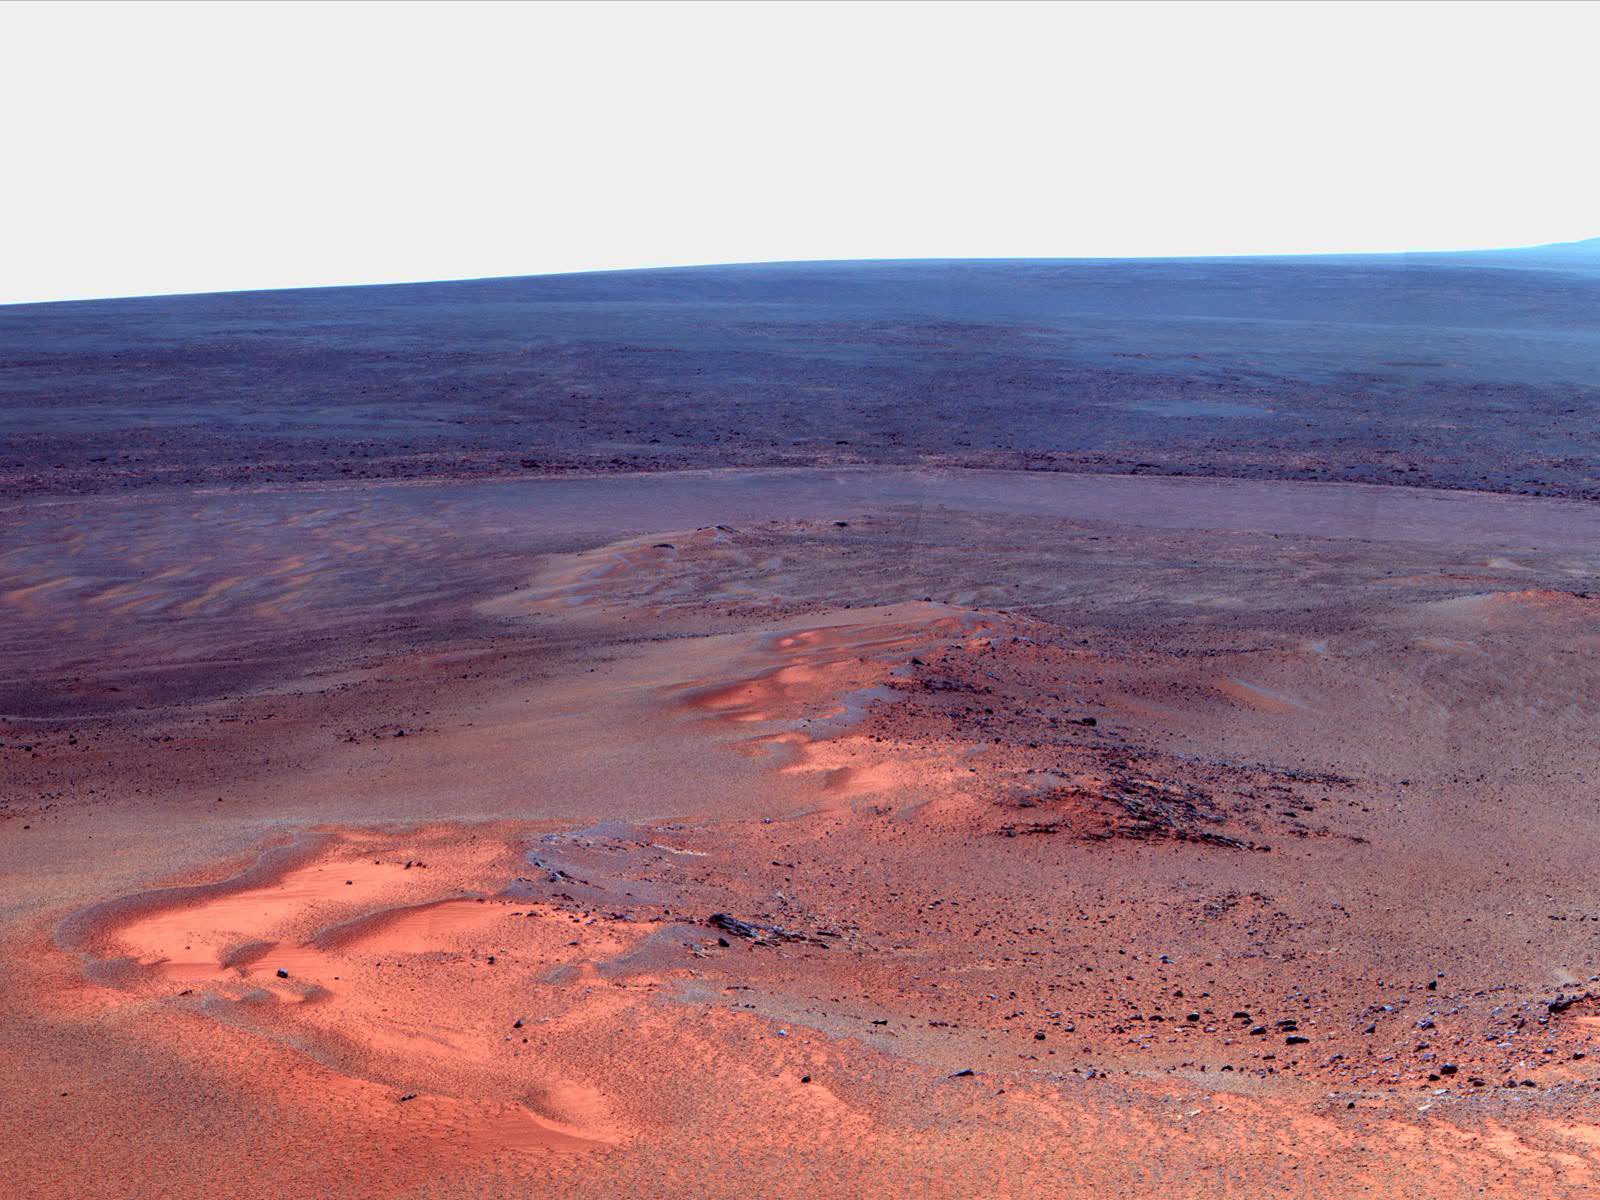 Tестват автономен марсиански роувър в пустиня